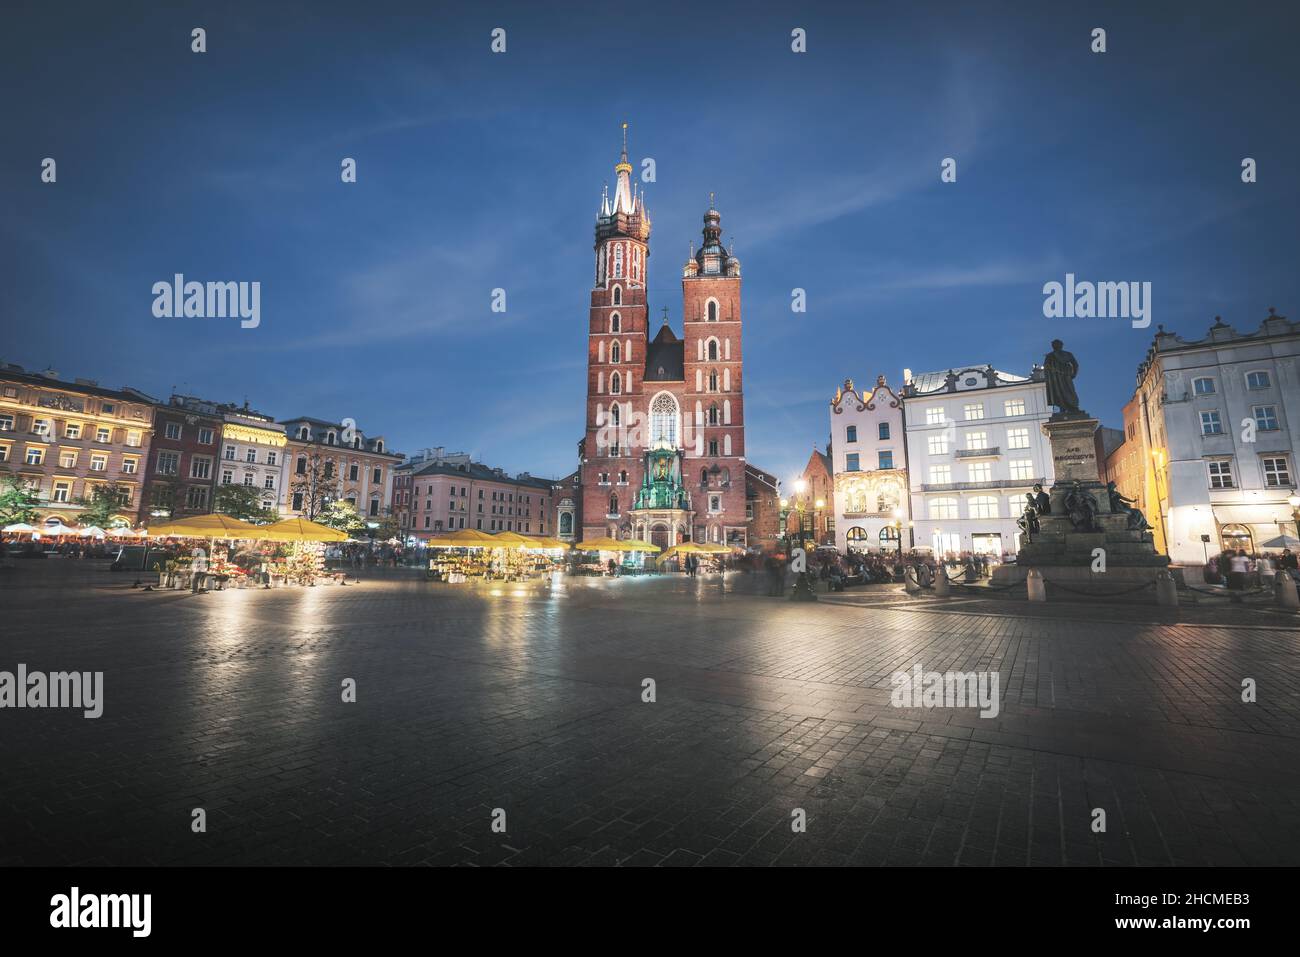 St. Mary's Basilica and Main Market Square at night - Krakow, Poland Stock Photo